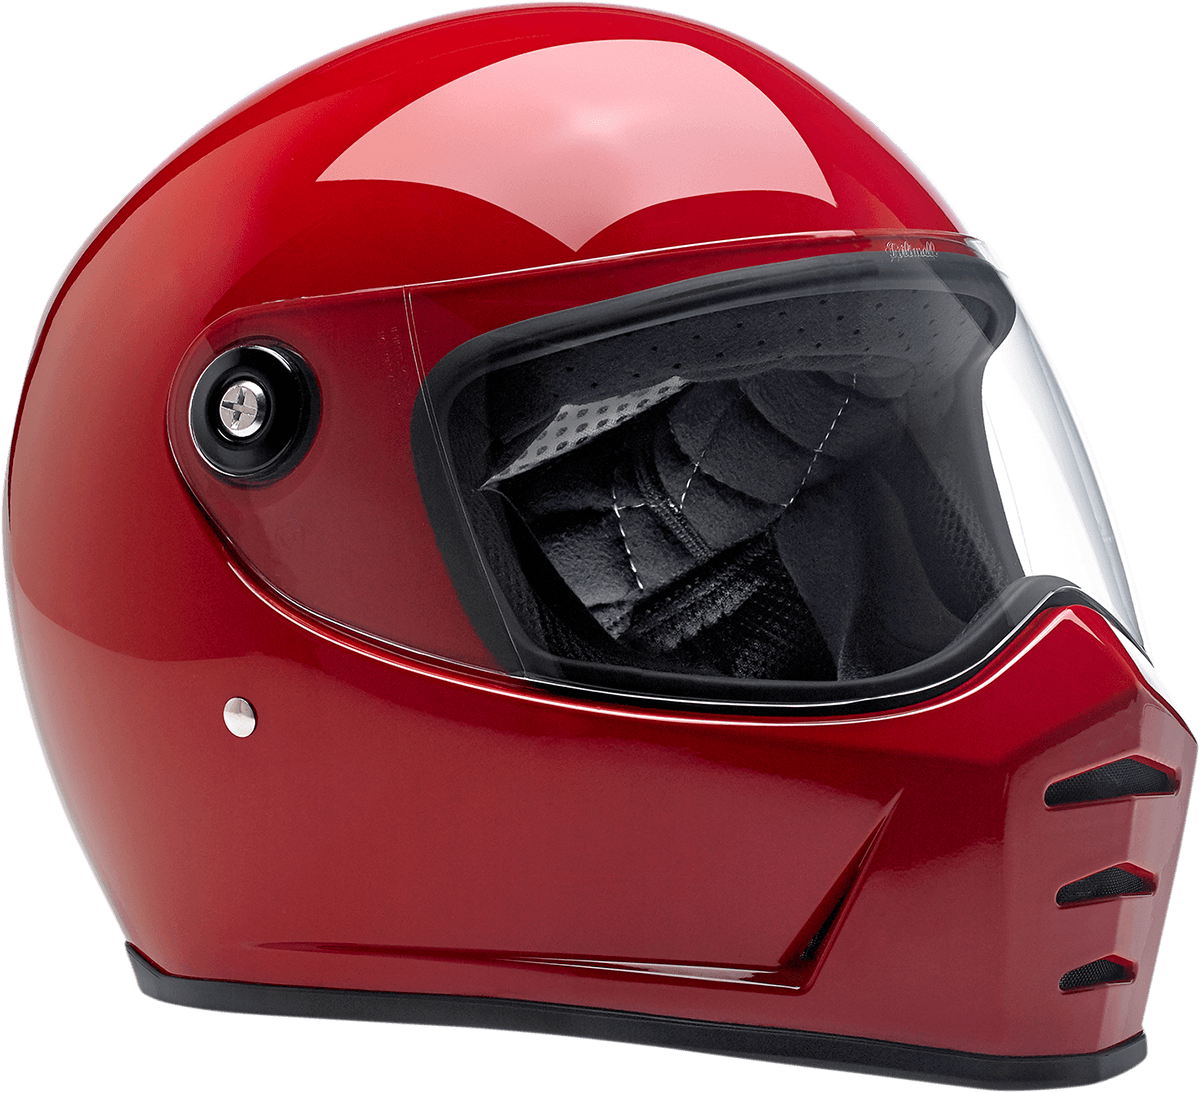 BILTWELL-Lane Splitter Helmet / Gloss Blood Red-Helmet-MetalCore Harley Supply